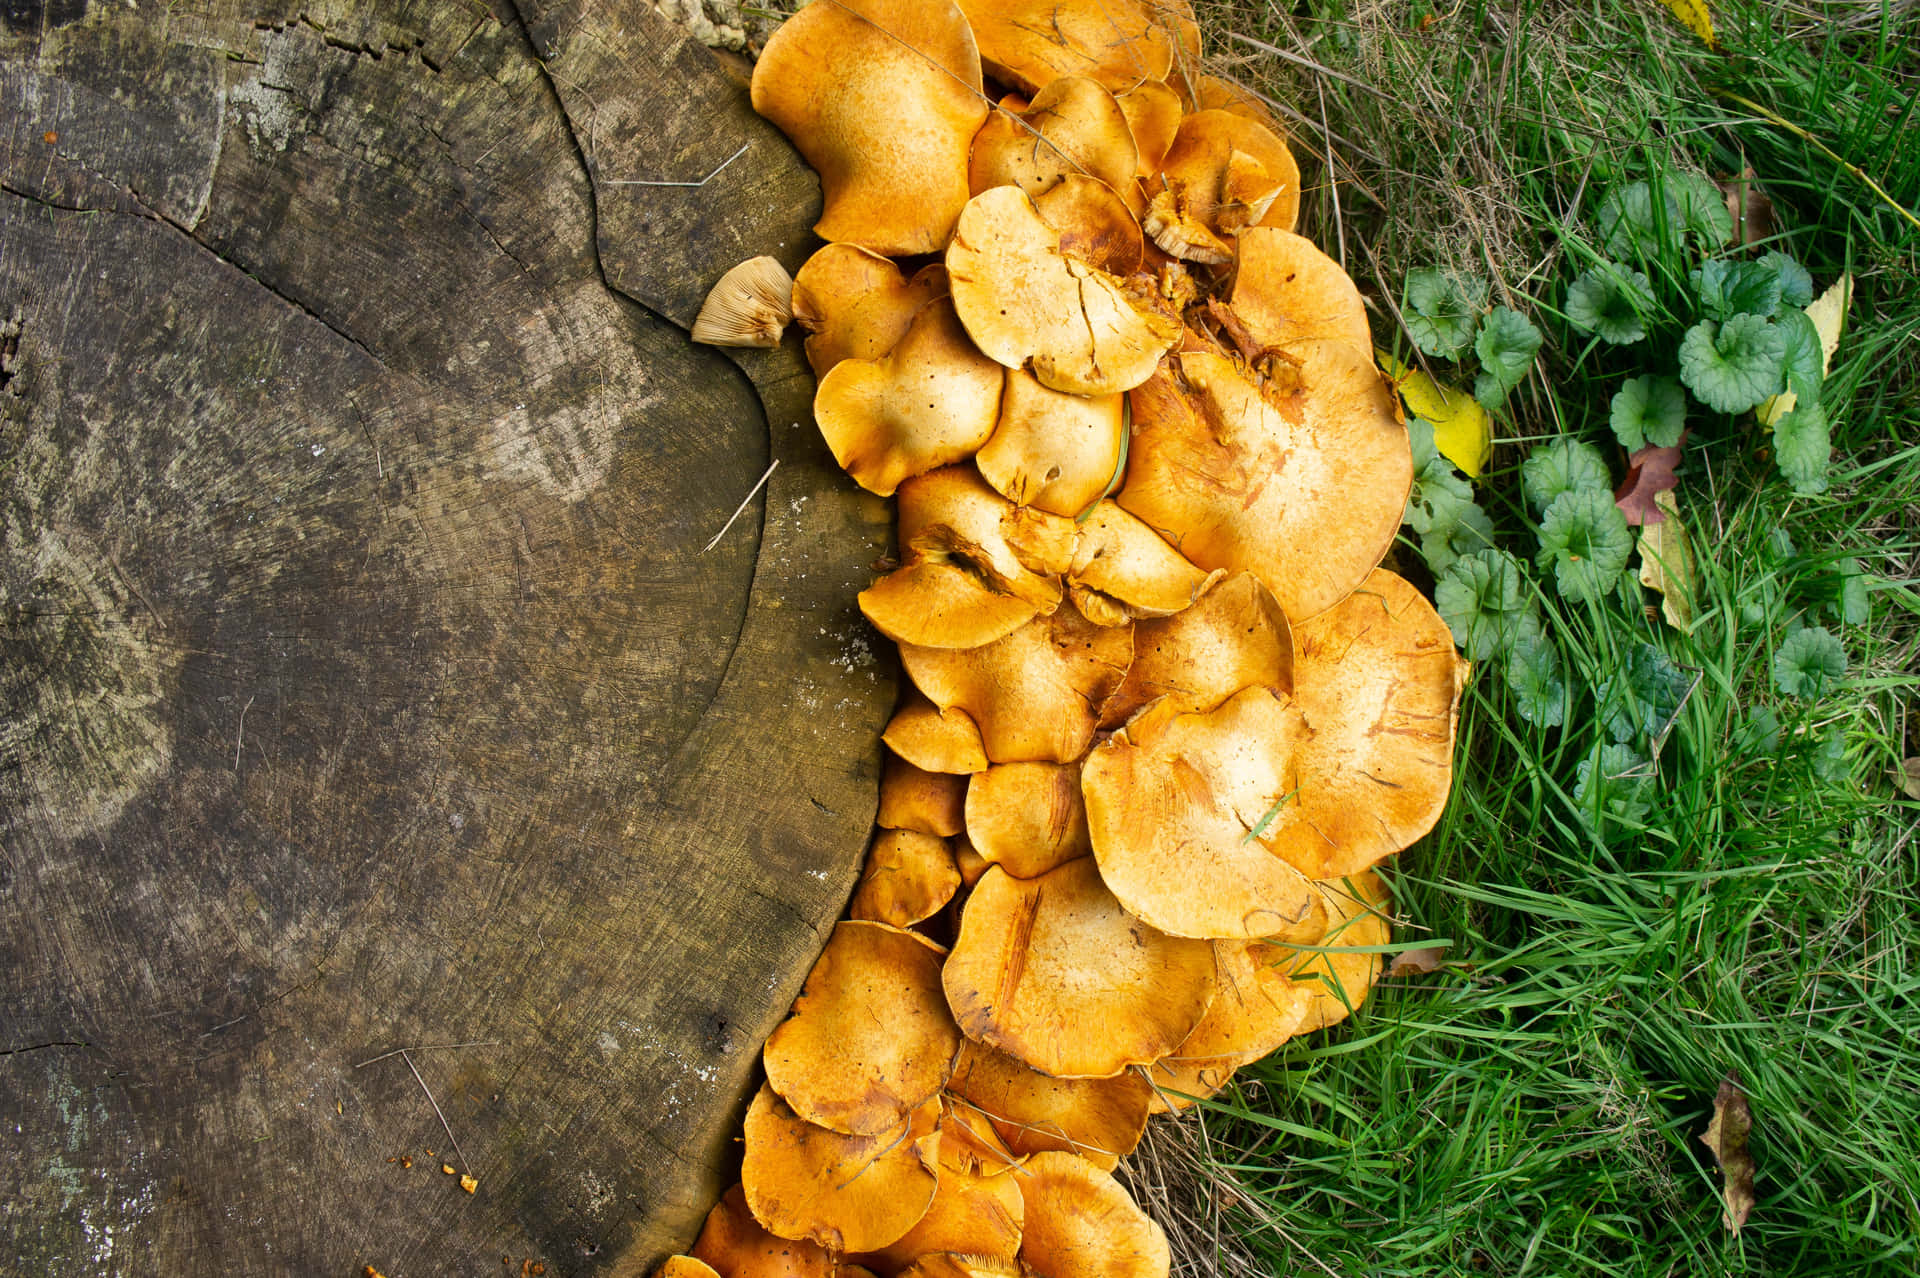 Mushroom Pictures